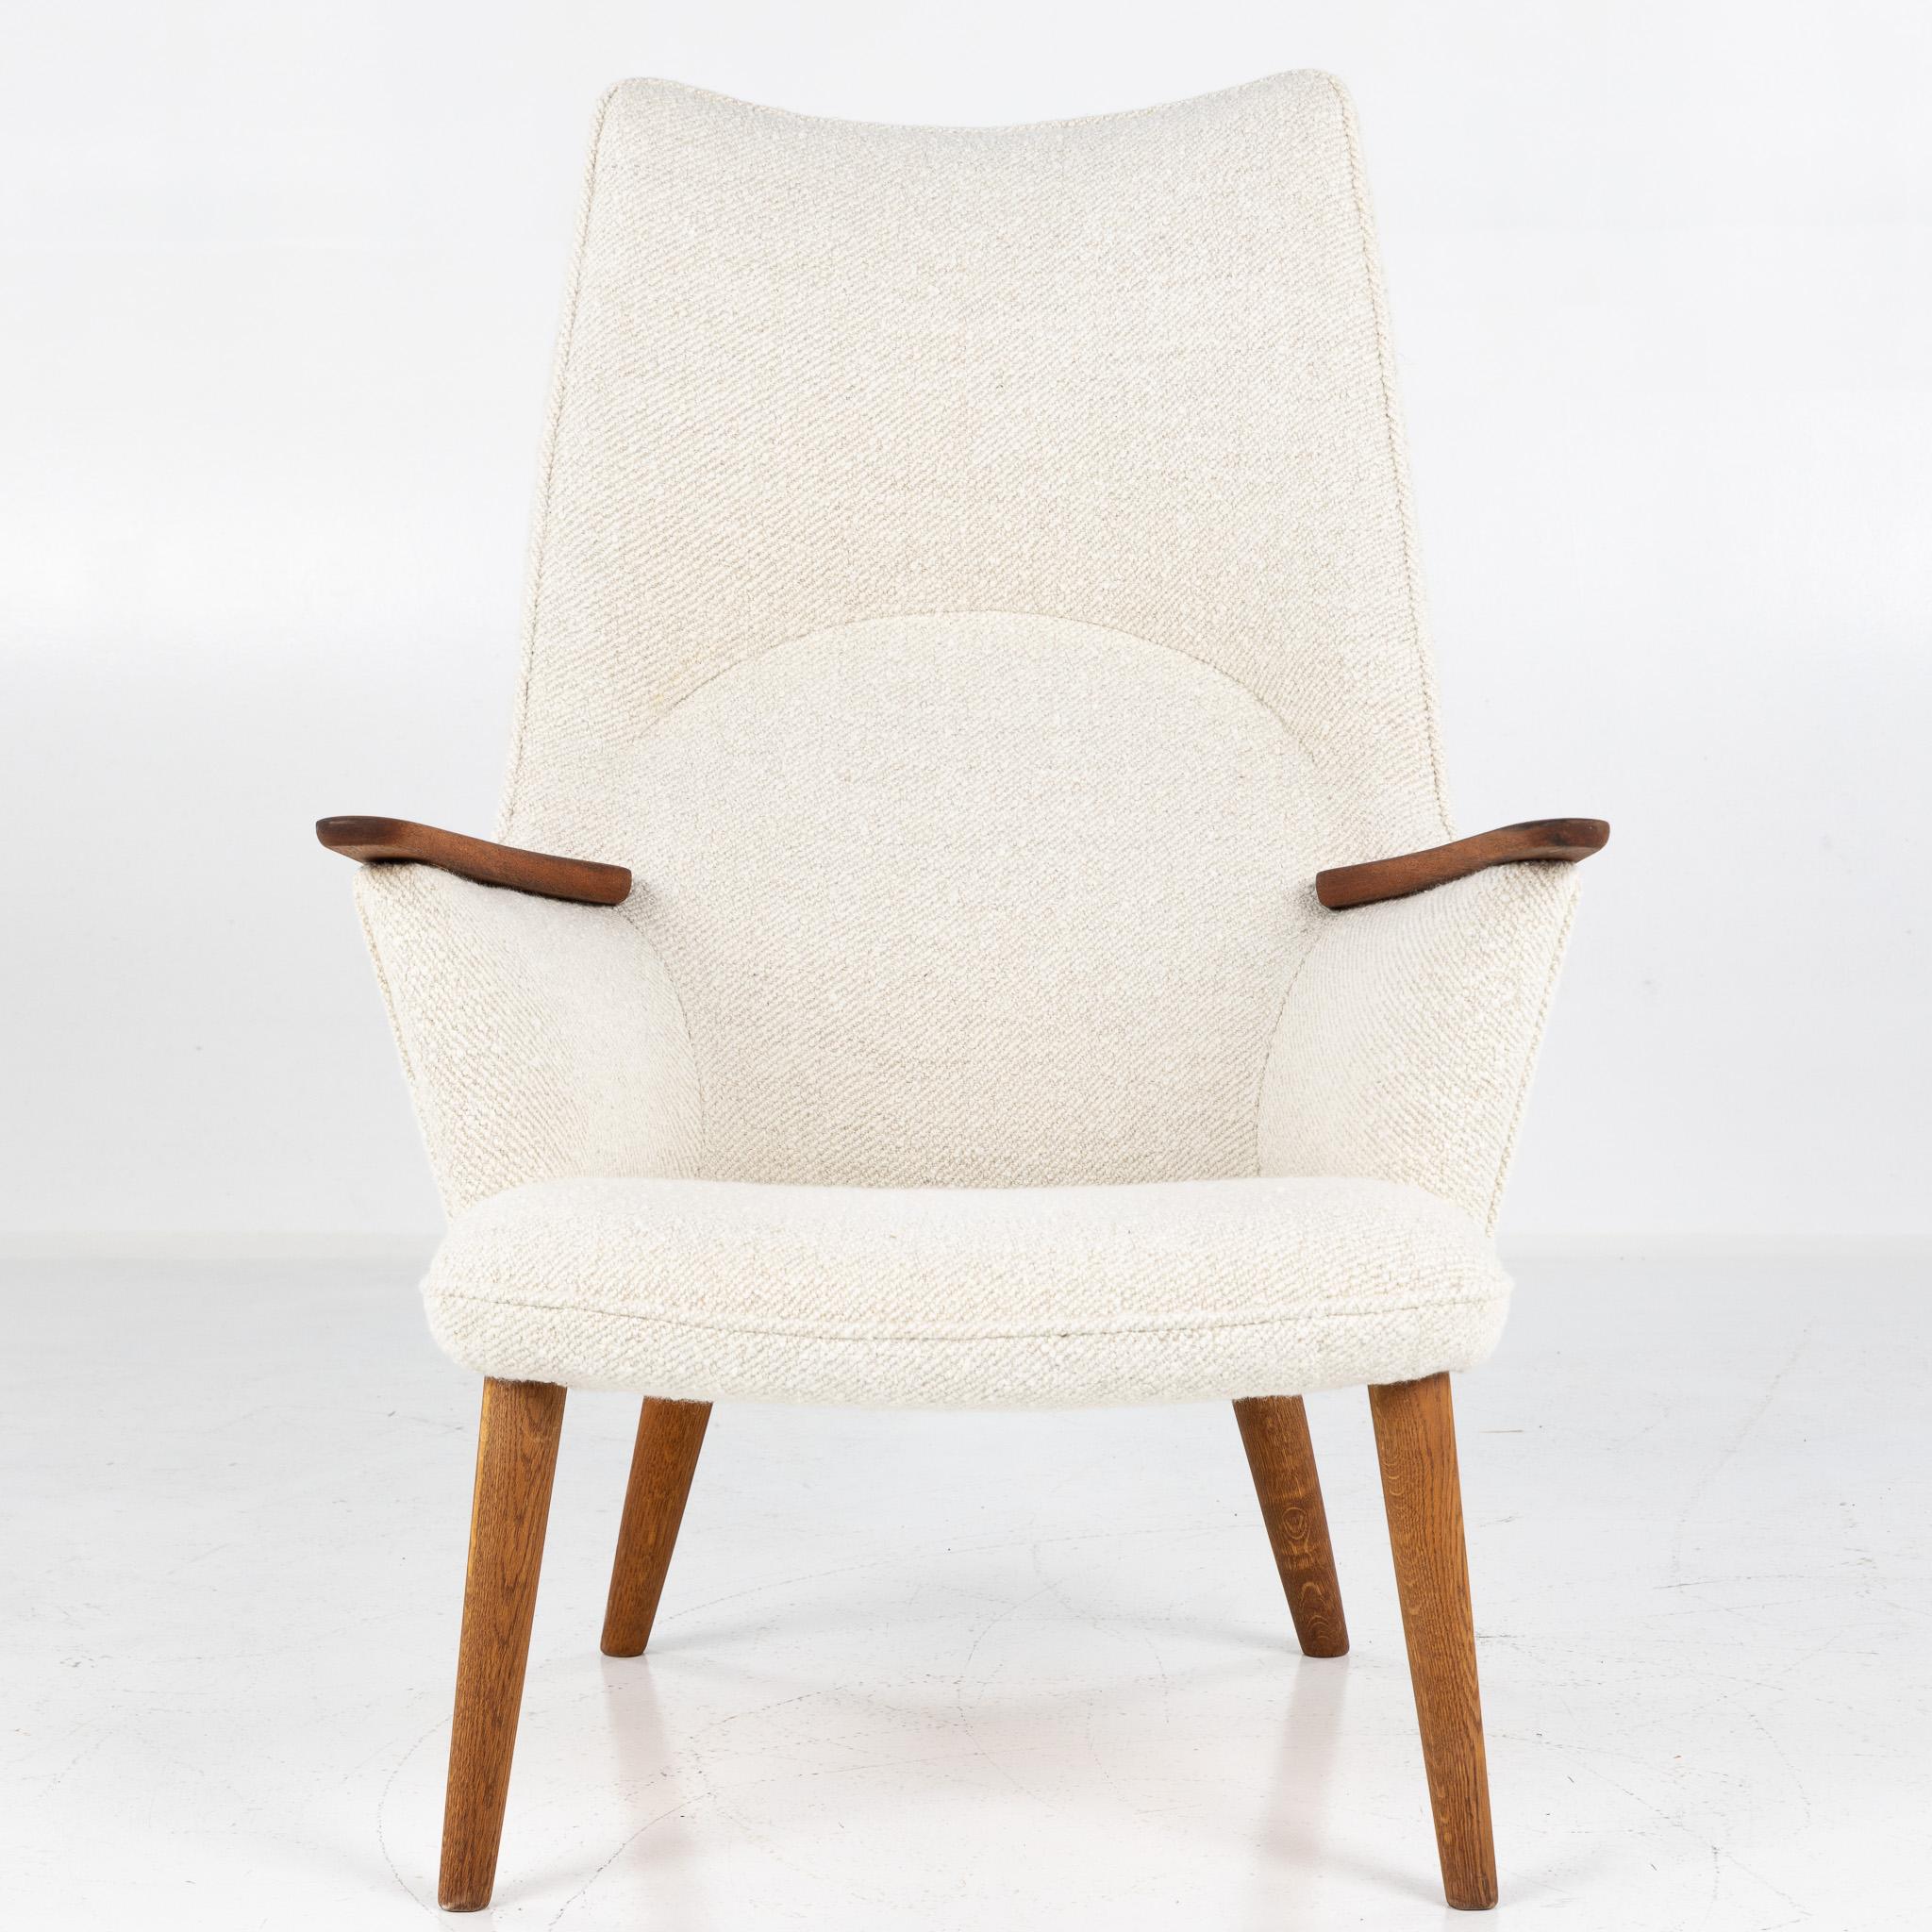 AP 27 - Lounge chair with teak armrests and oak legs. (Dedar A joy, 002 Natural). Designed in 1954 by Hans J. Wegner for AP Stolen.